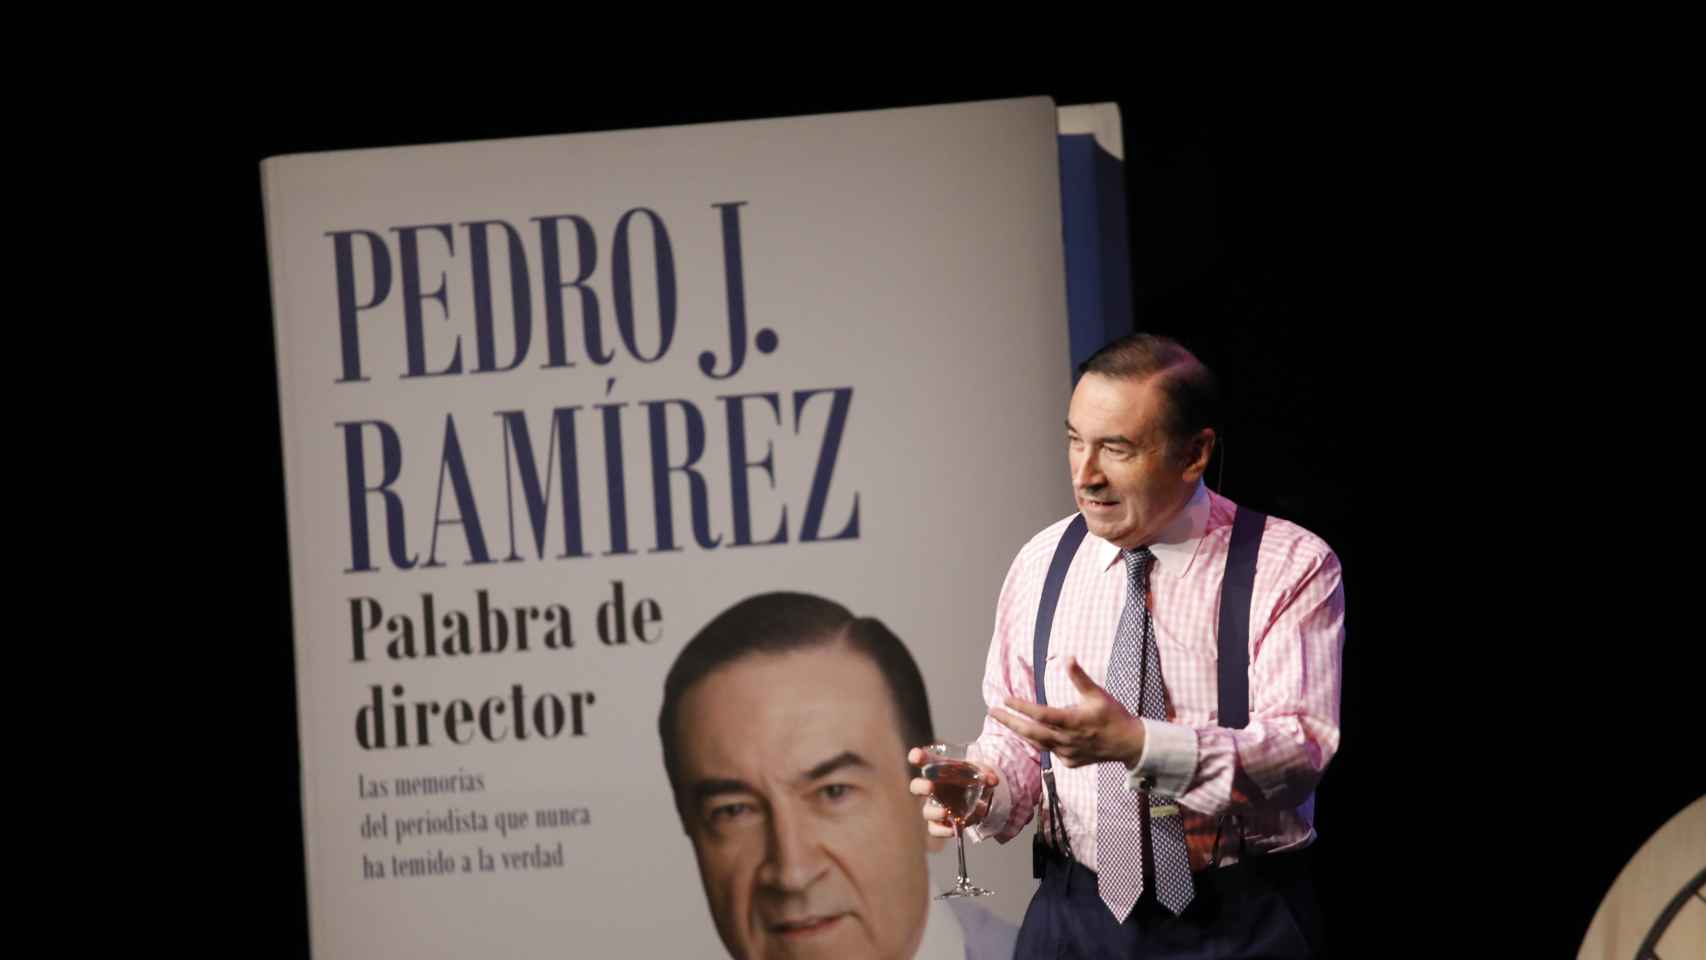 Pedro J. en la presentación de 'Palabra de director', el primer volumen de sus memorias